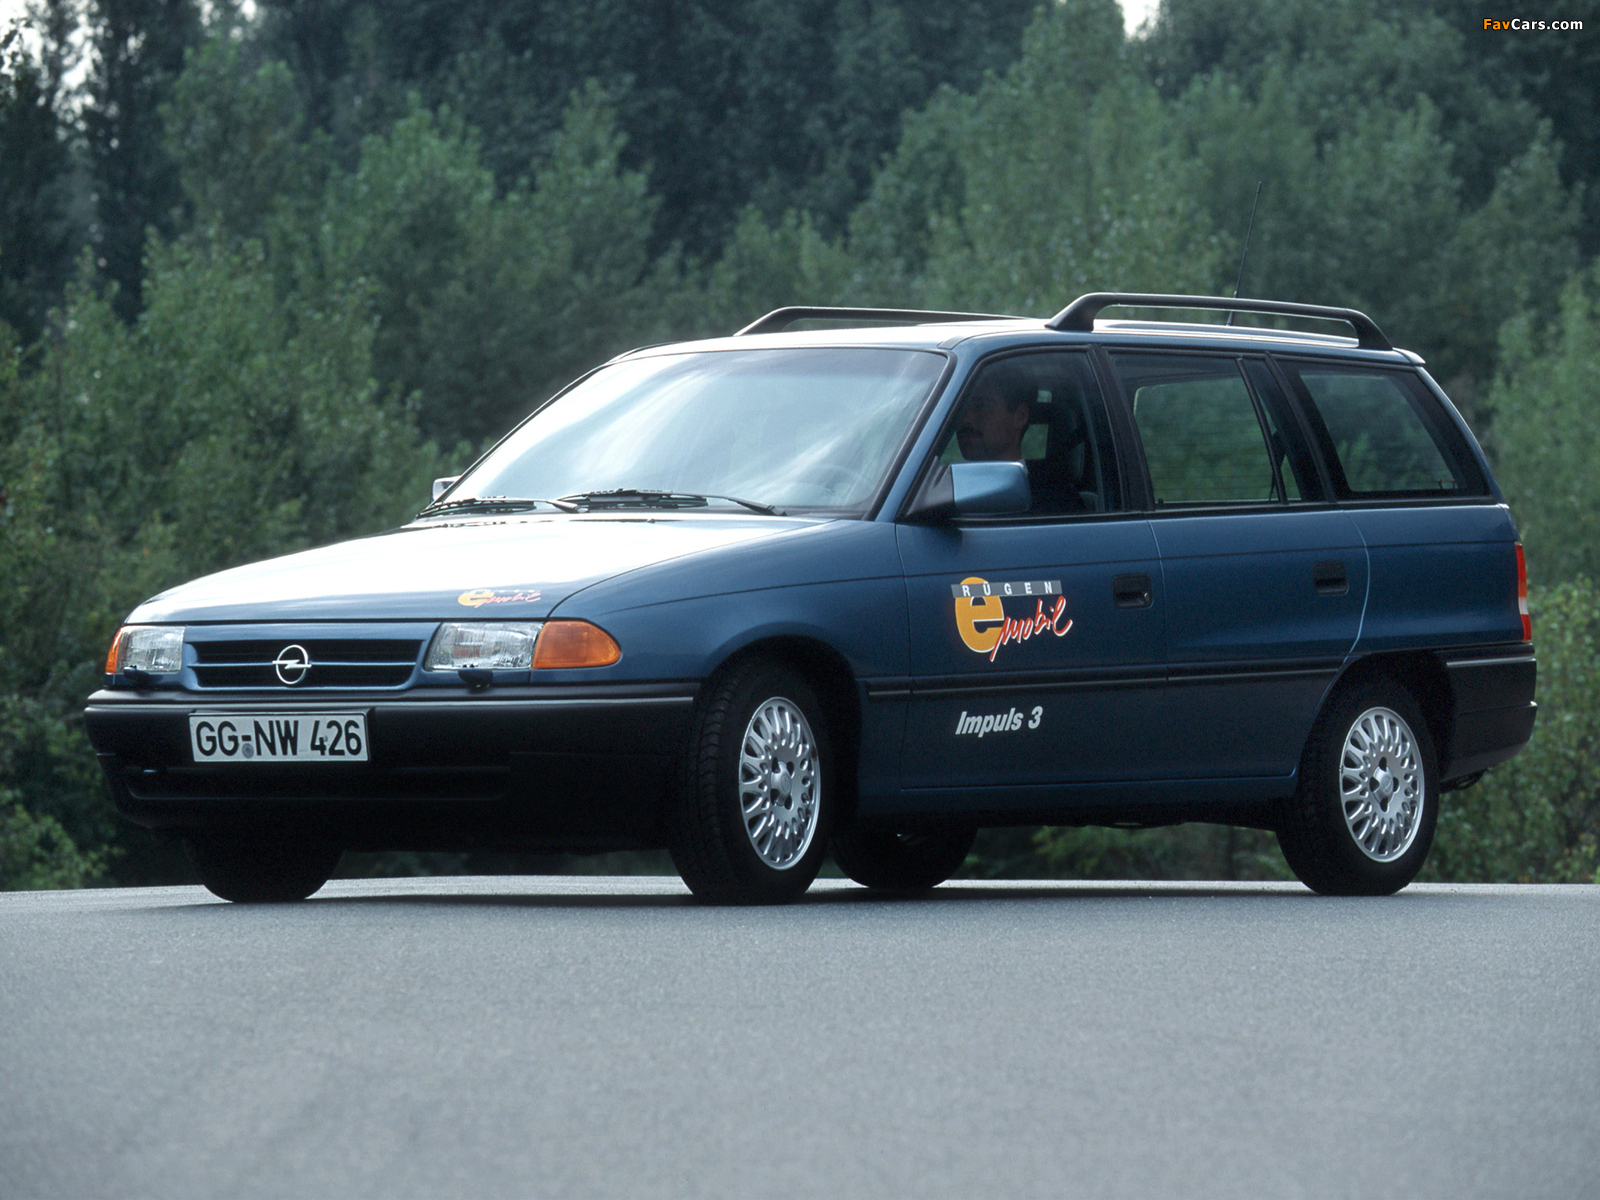 Opel Astra Impuls 3 (F) 1993 photos (1600 x 1200)